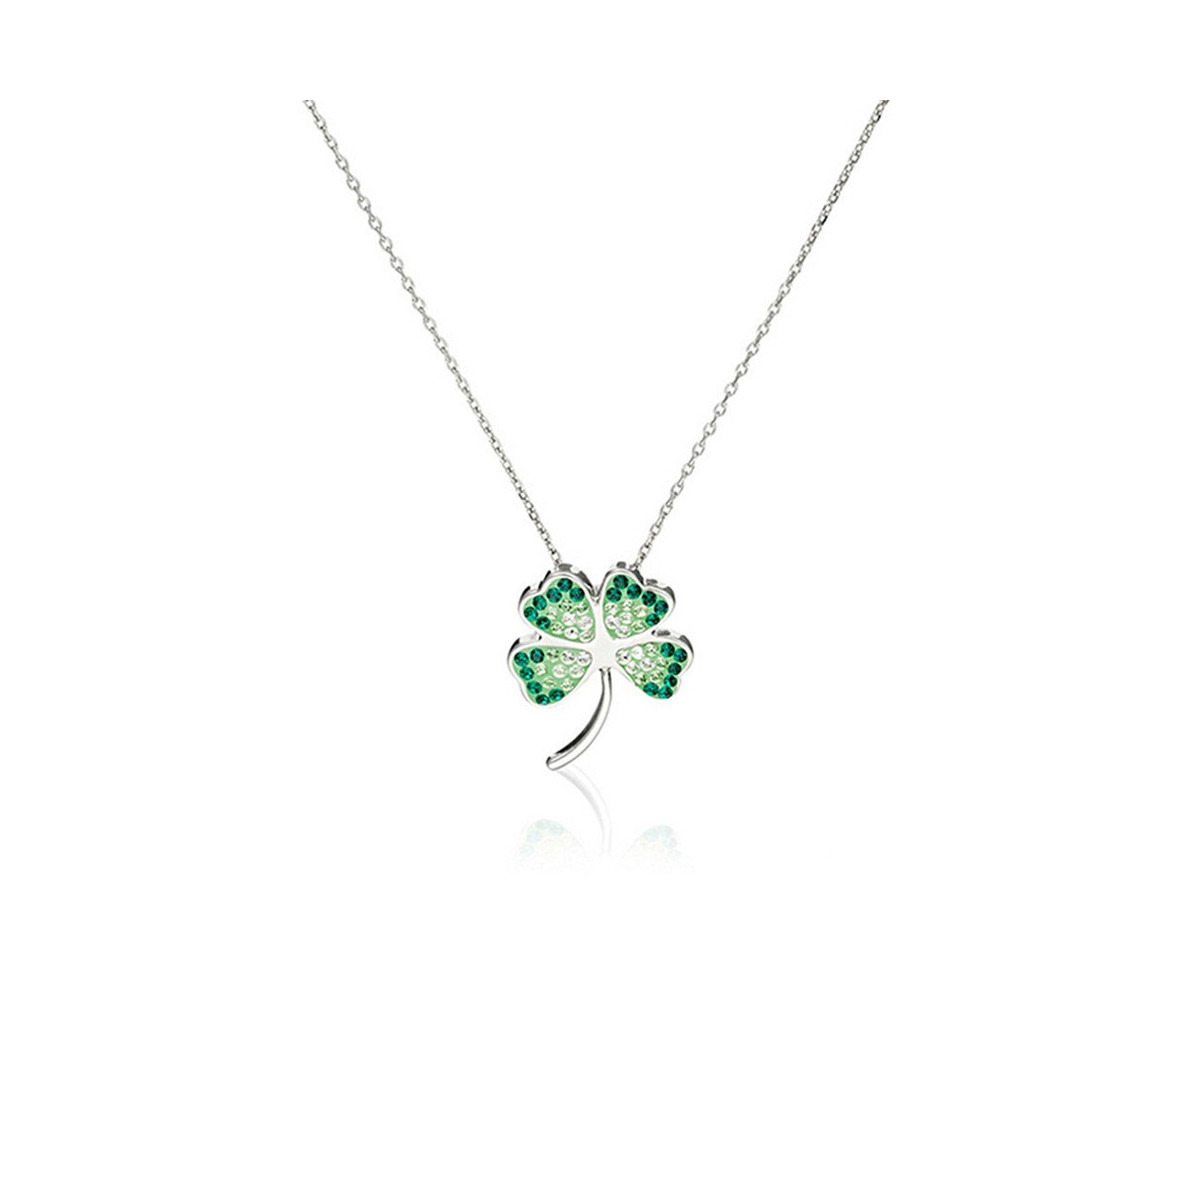 Pendentif Argent orné de cristaux Vert "Bonheur" + chaîne argent offerte